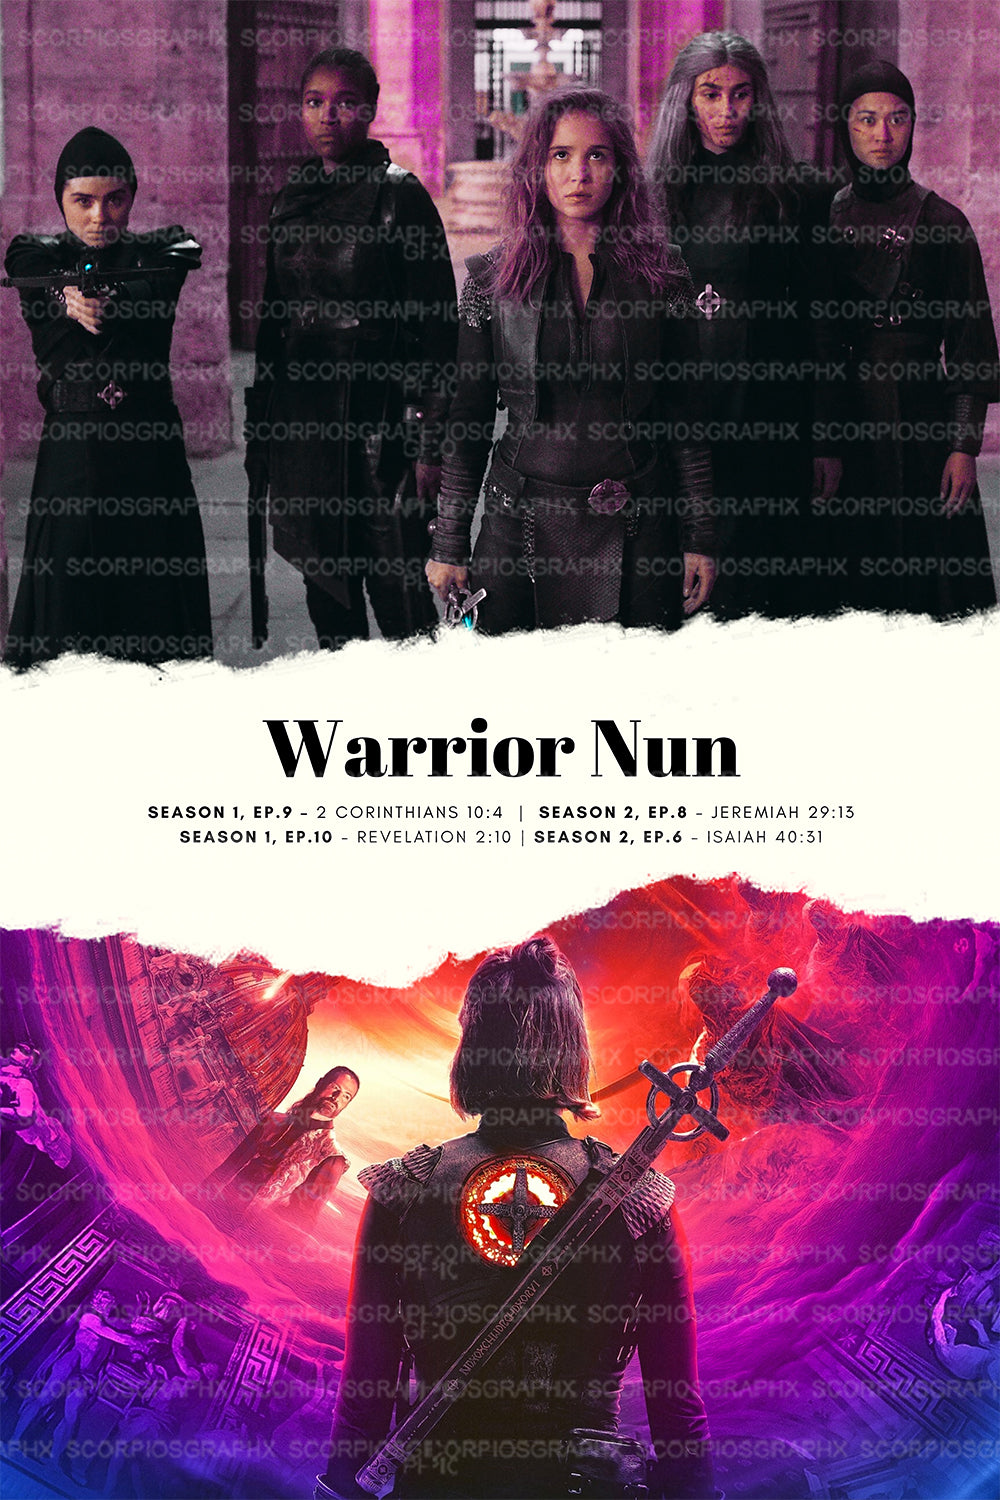 Warrior Nun Episode Poster - Wall Art Printable